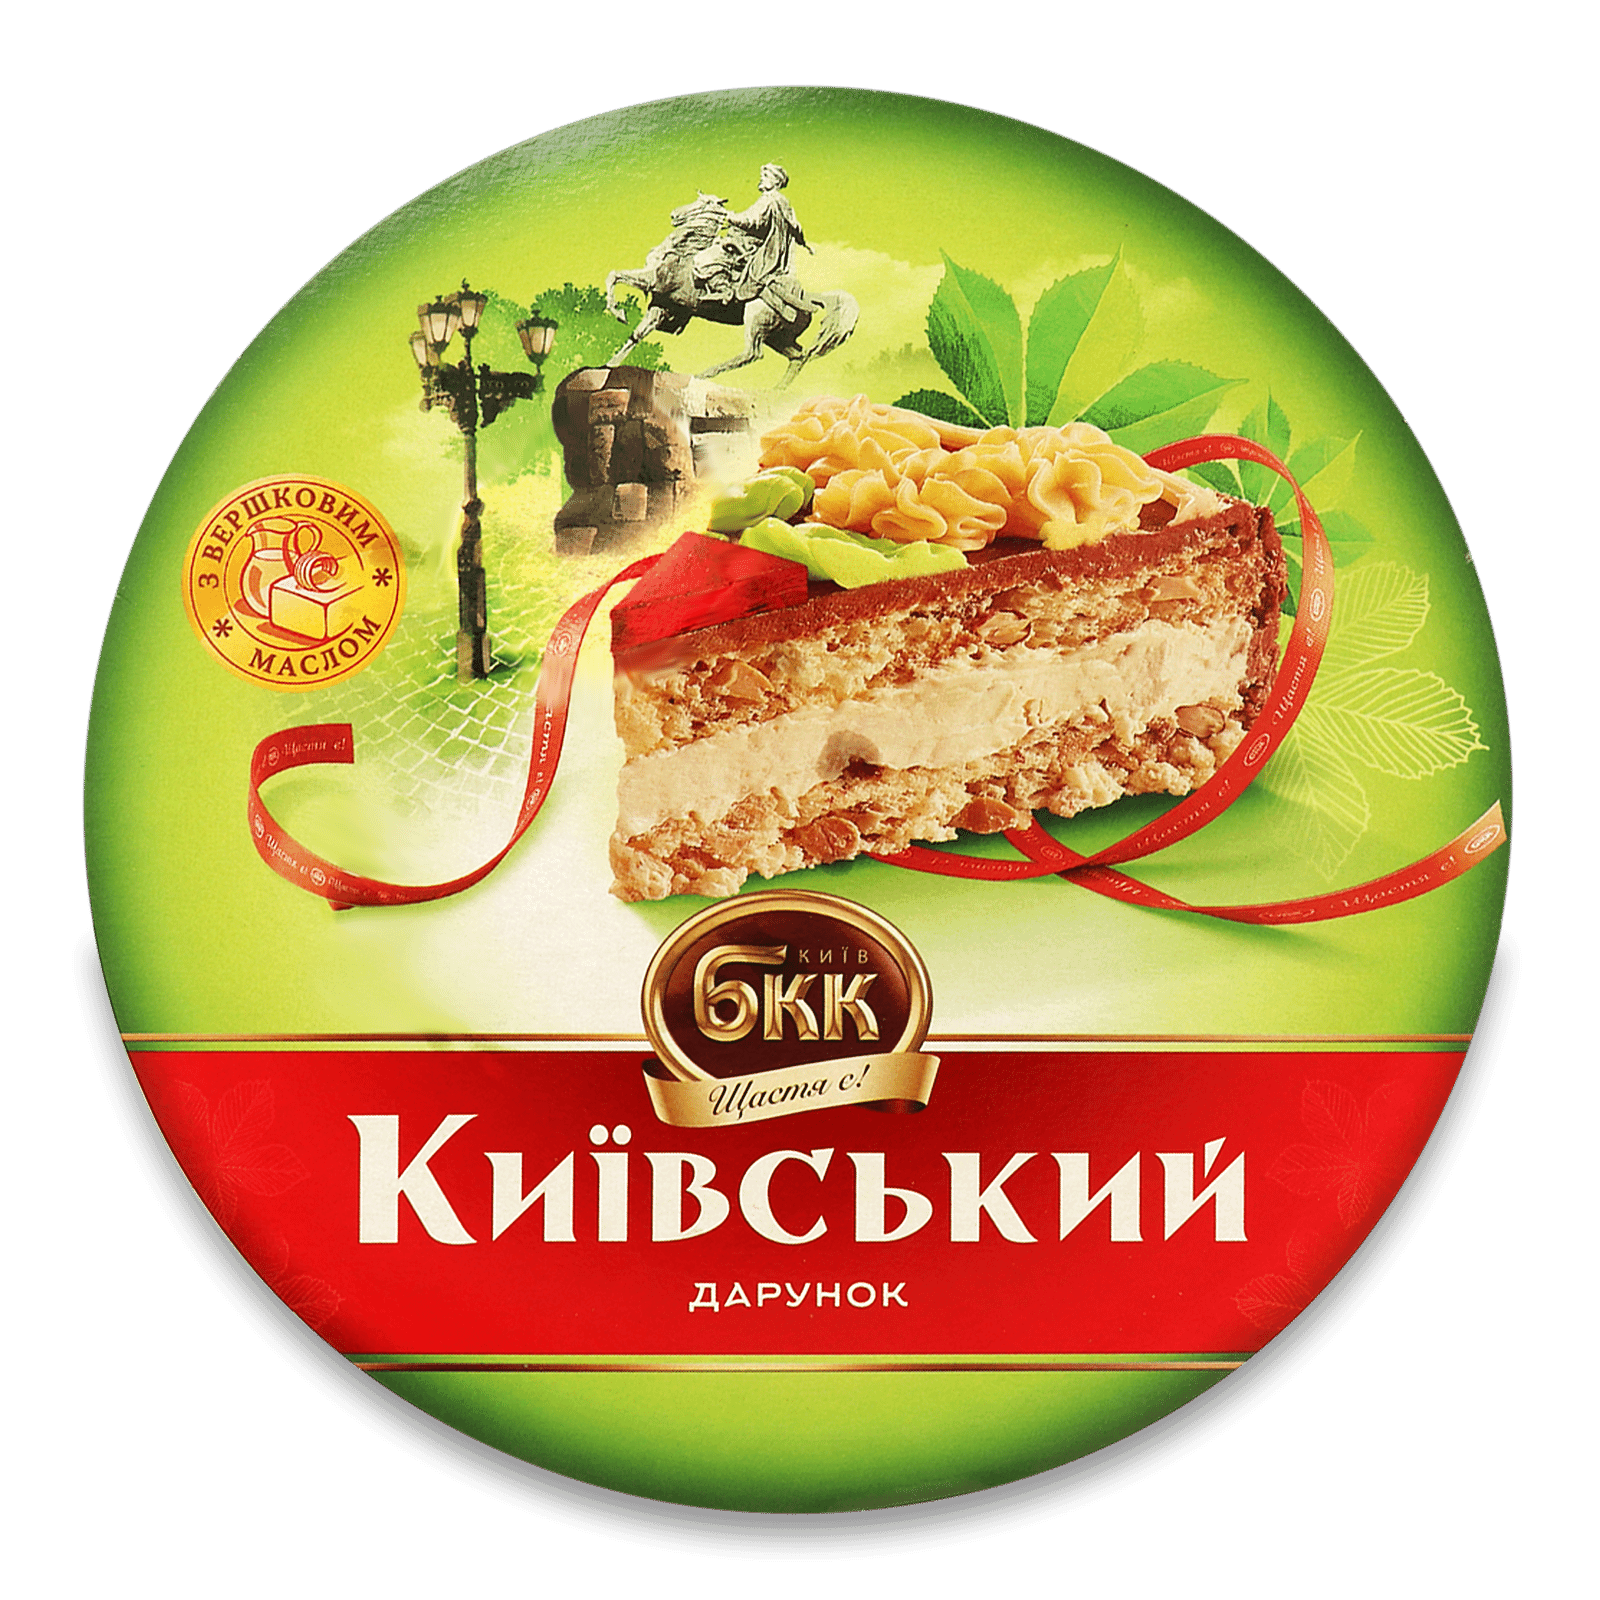 Торт БКК «Київський дарунок» з арахісом - 1